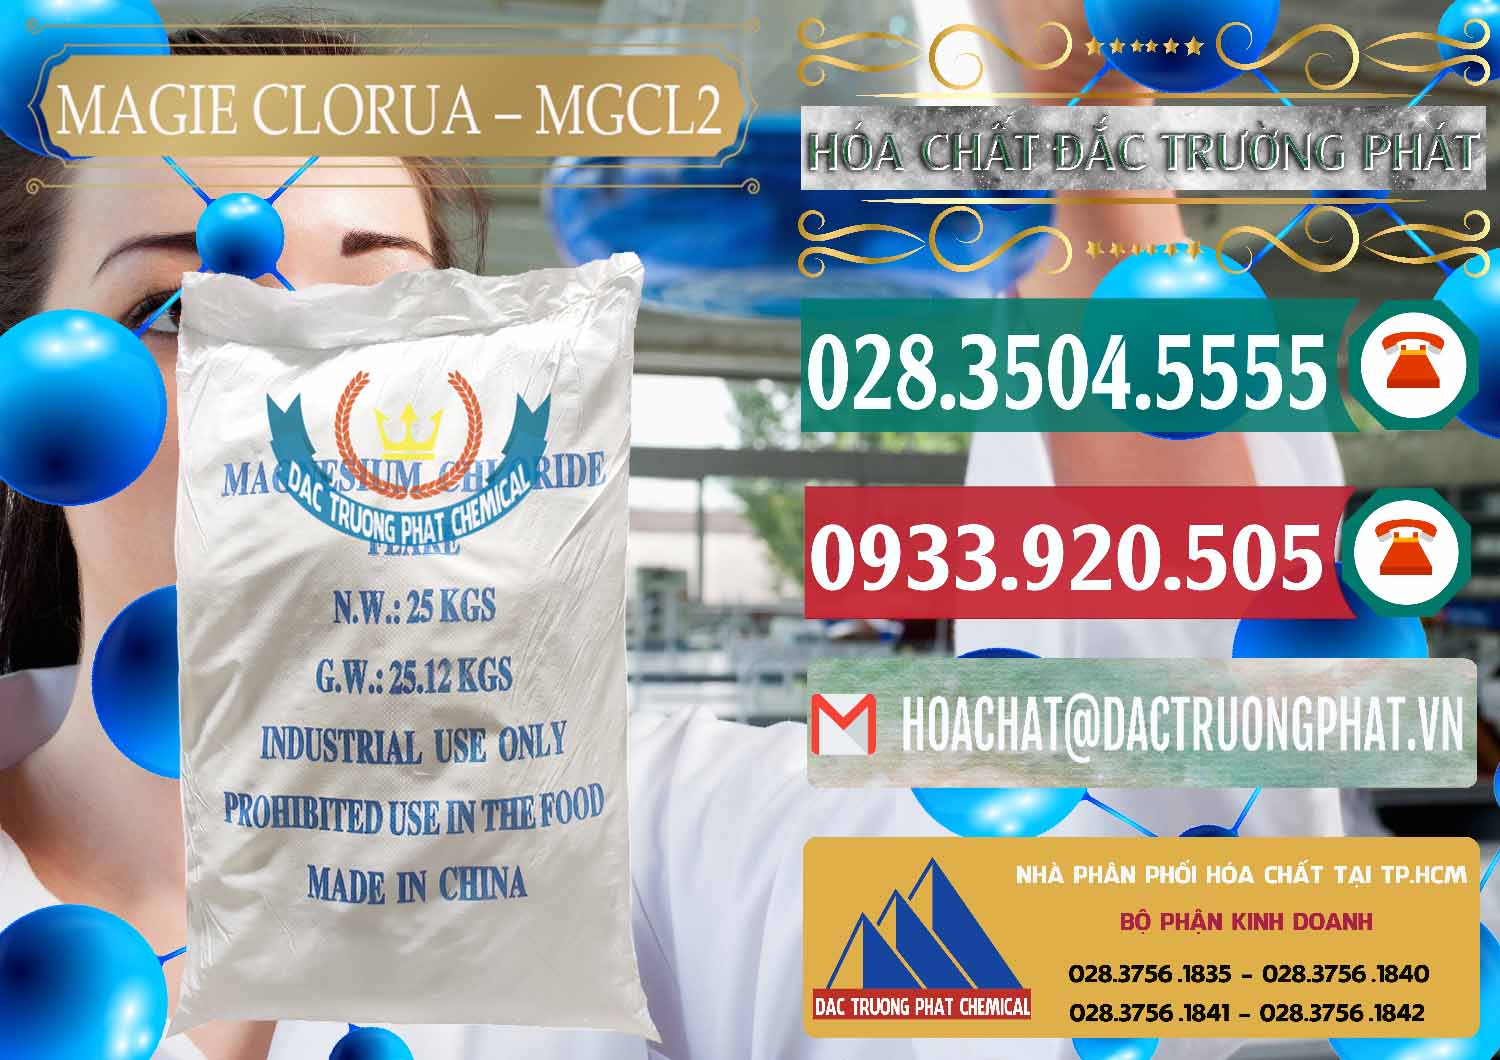 Công ty chuyên bán _ phân phối Magie Clorua – MGCL2 96% Dạng Vảy Trung Quốc China - 0091 - Nơi chuyên phân phối - kinh doanh hóa chất tại TP.HCM - muabanhoachat.vn